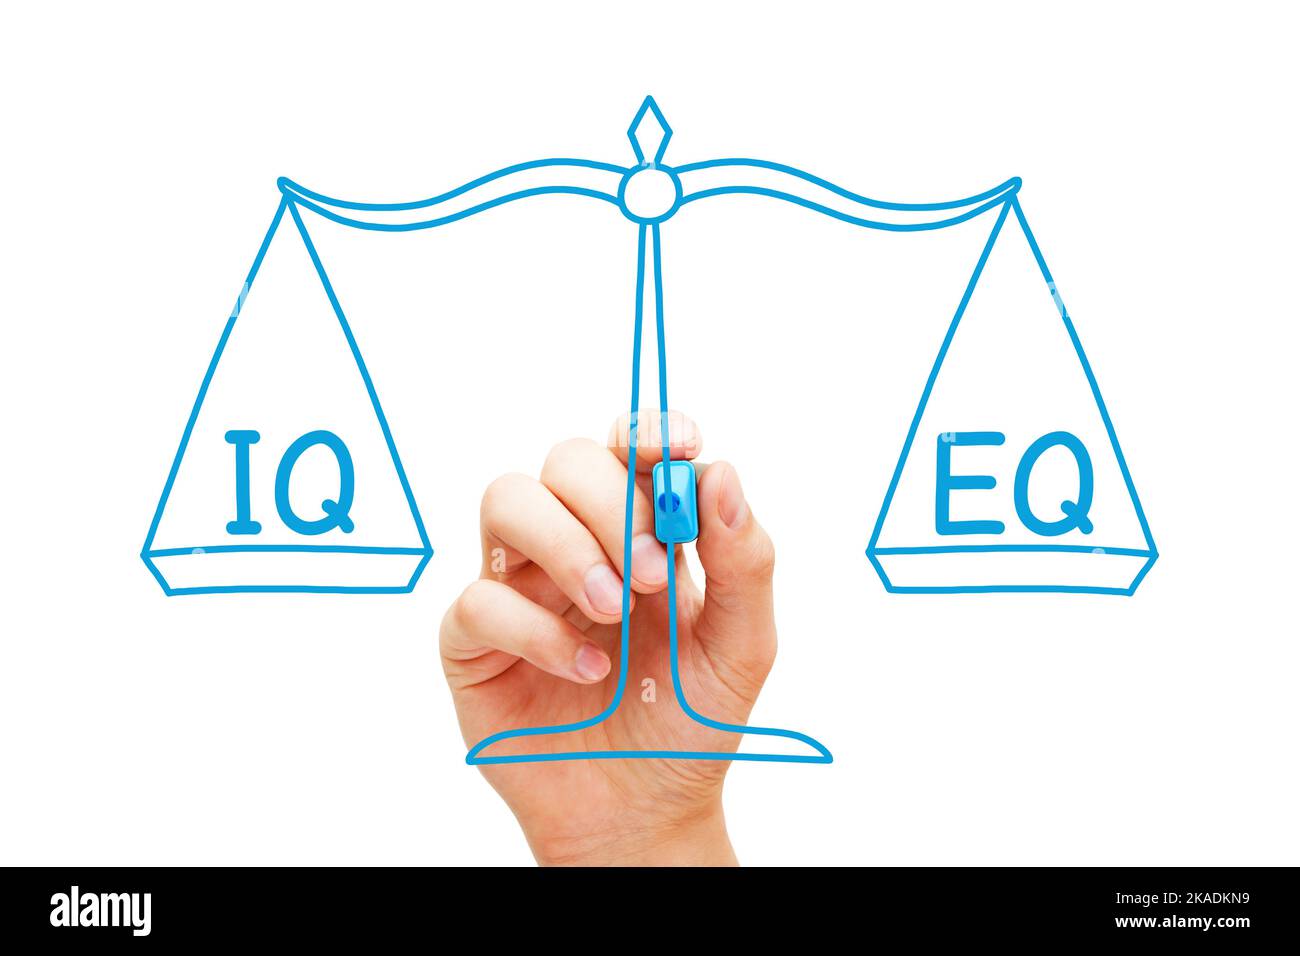 Disegnare a mano un concetto sul quoziente intelligenza IQ e sul quoziente intelligenza emotiva EQ ponderato su scala. Foto Stock